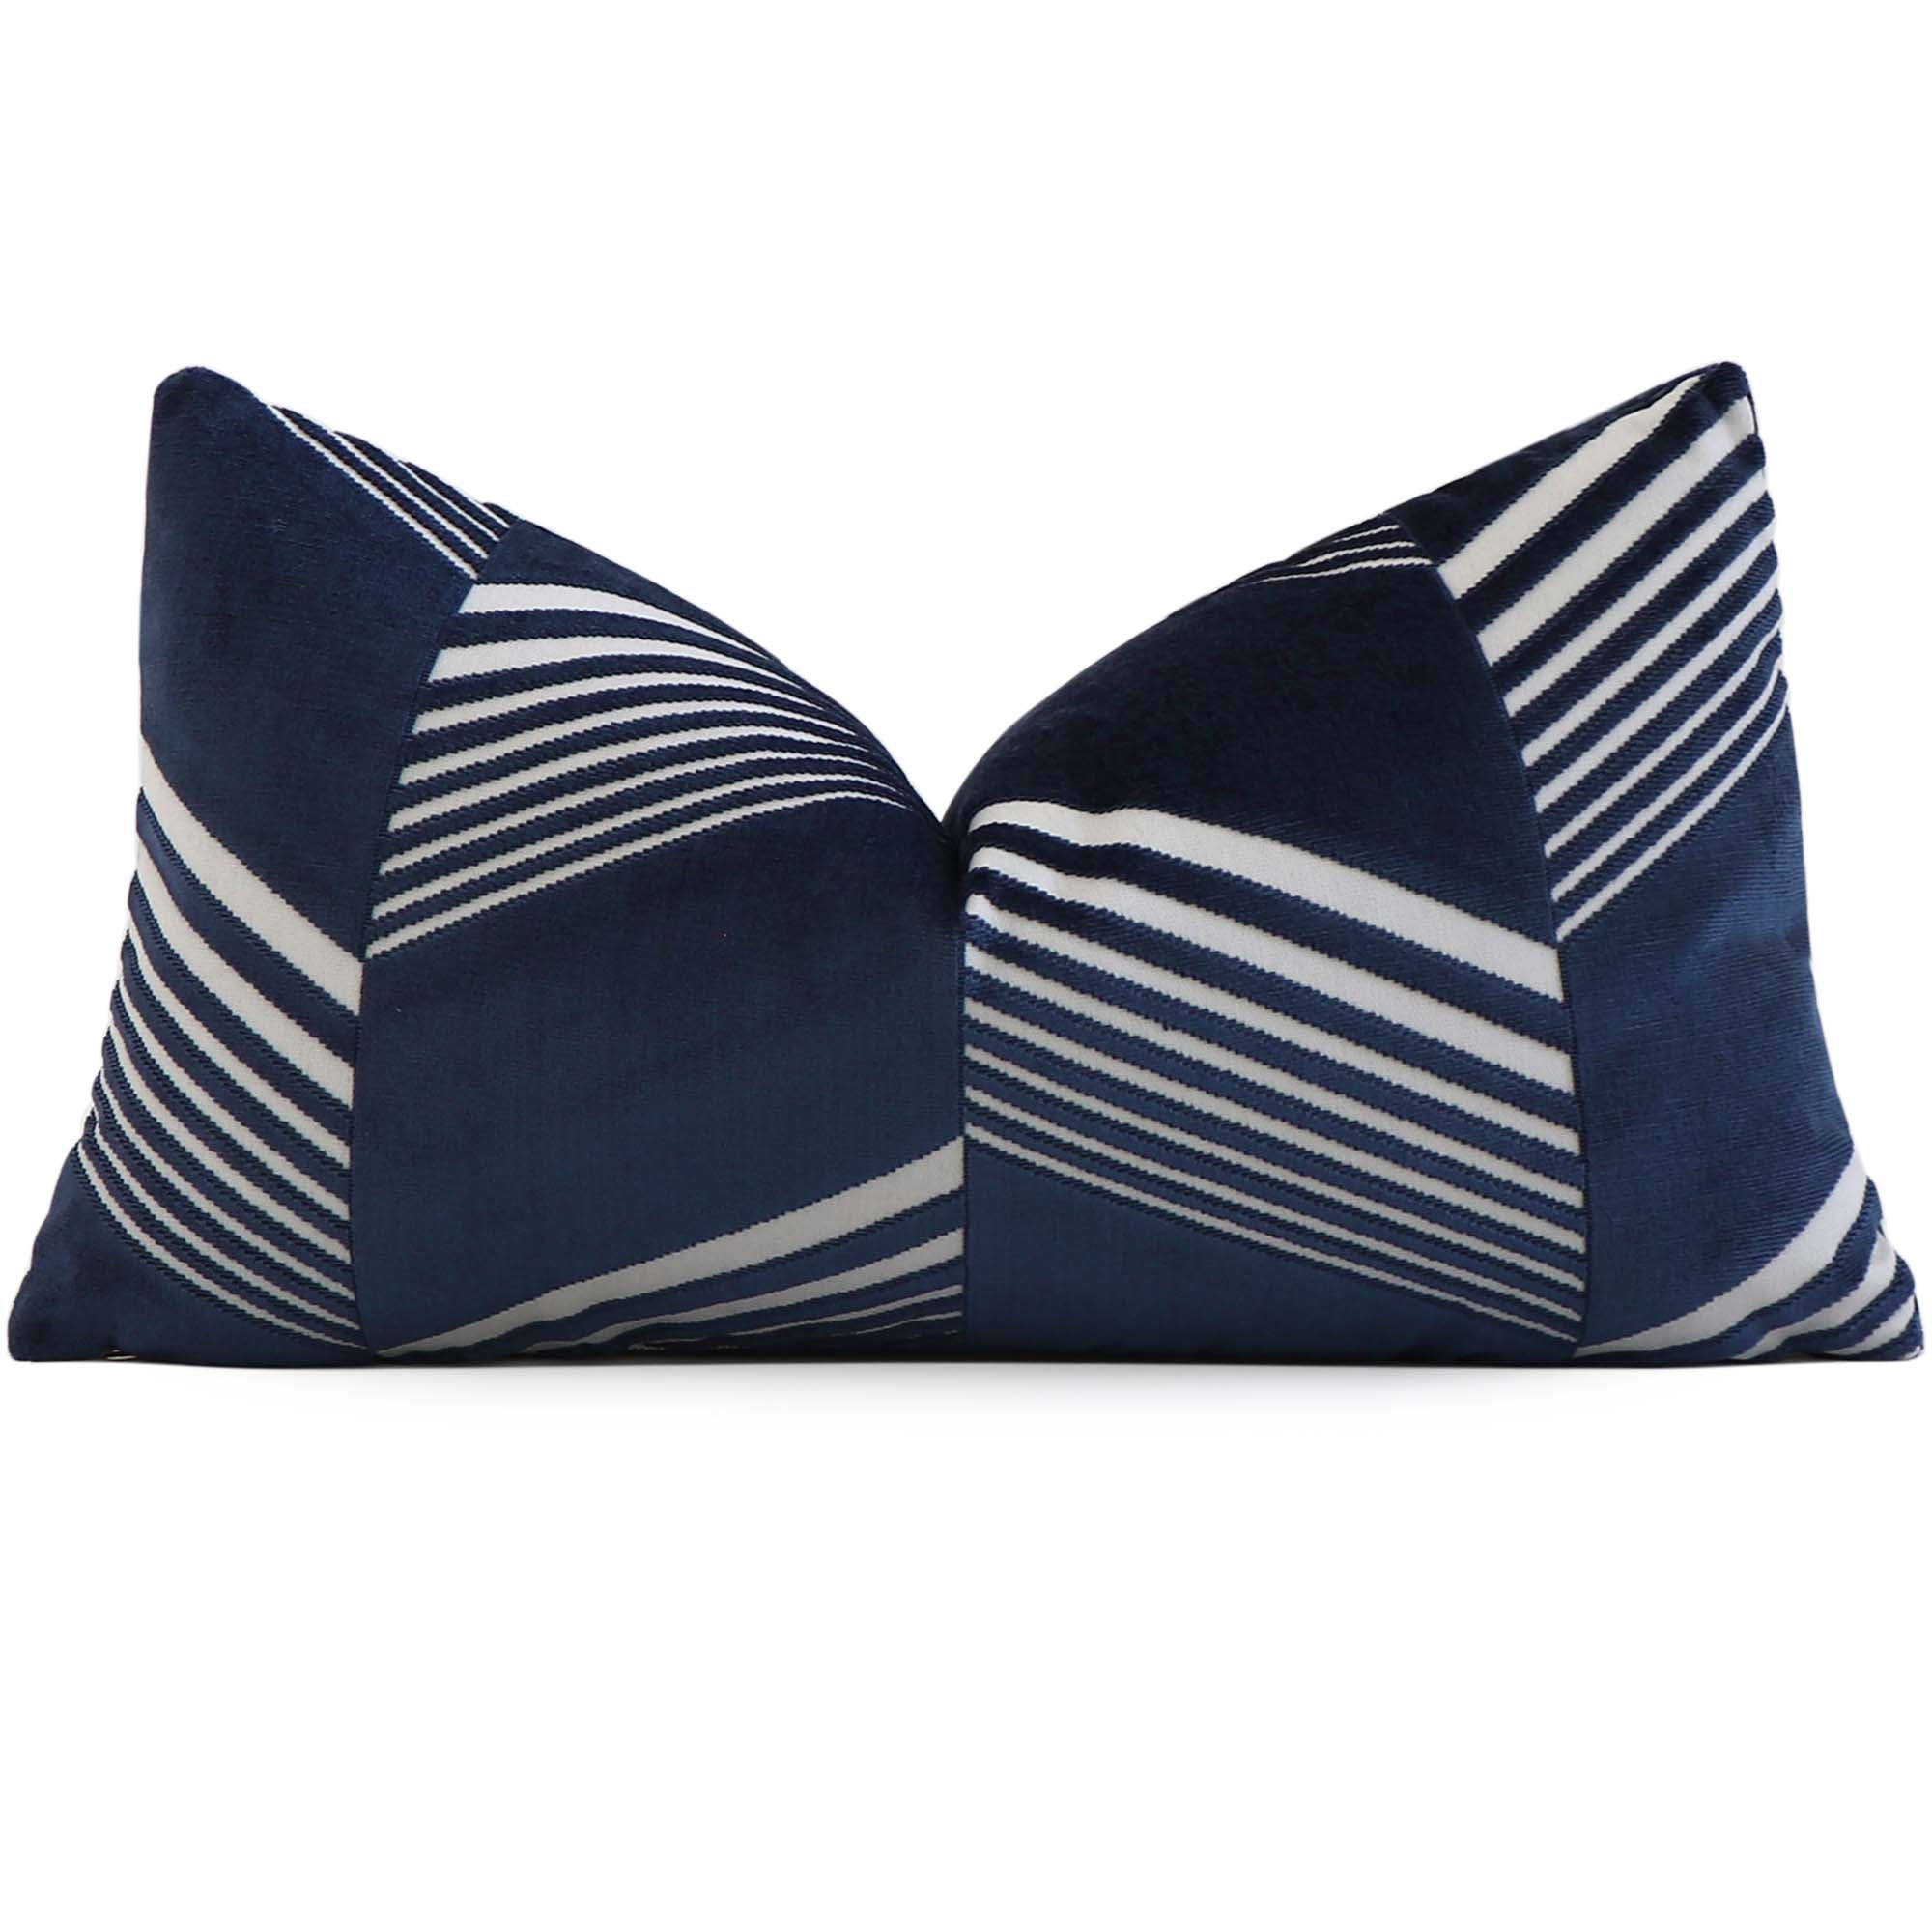 Schumacher Jessie Cut Velvet Navy Blue Designer Decorative Lumbar Throw Pillow Cover